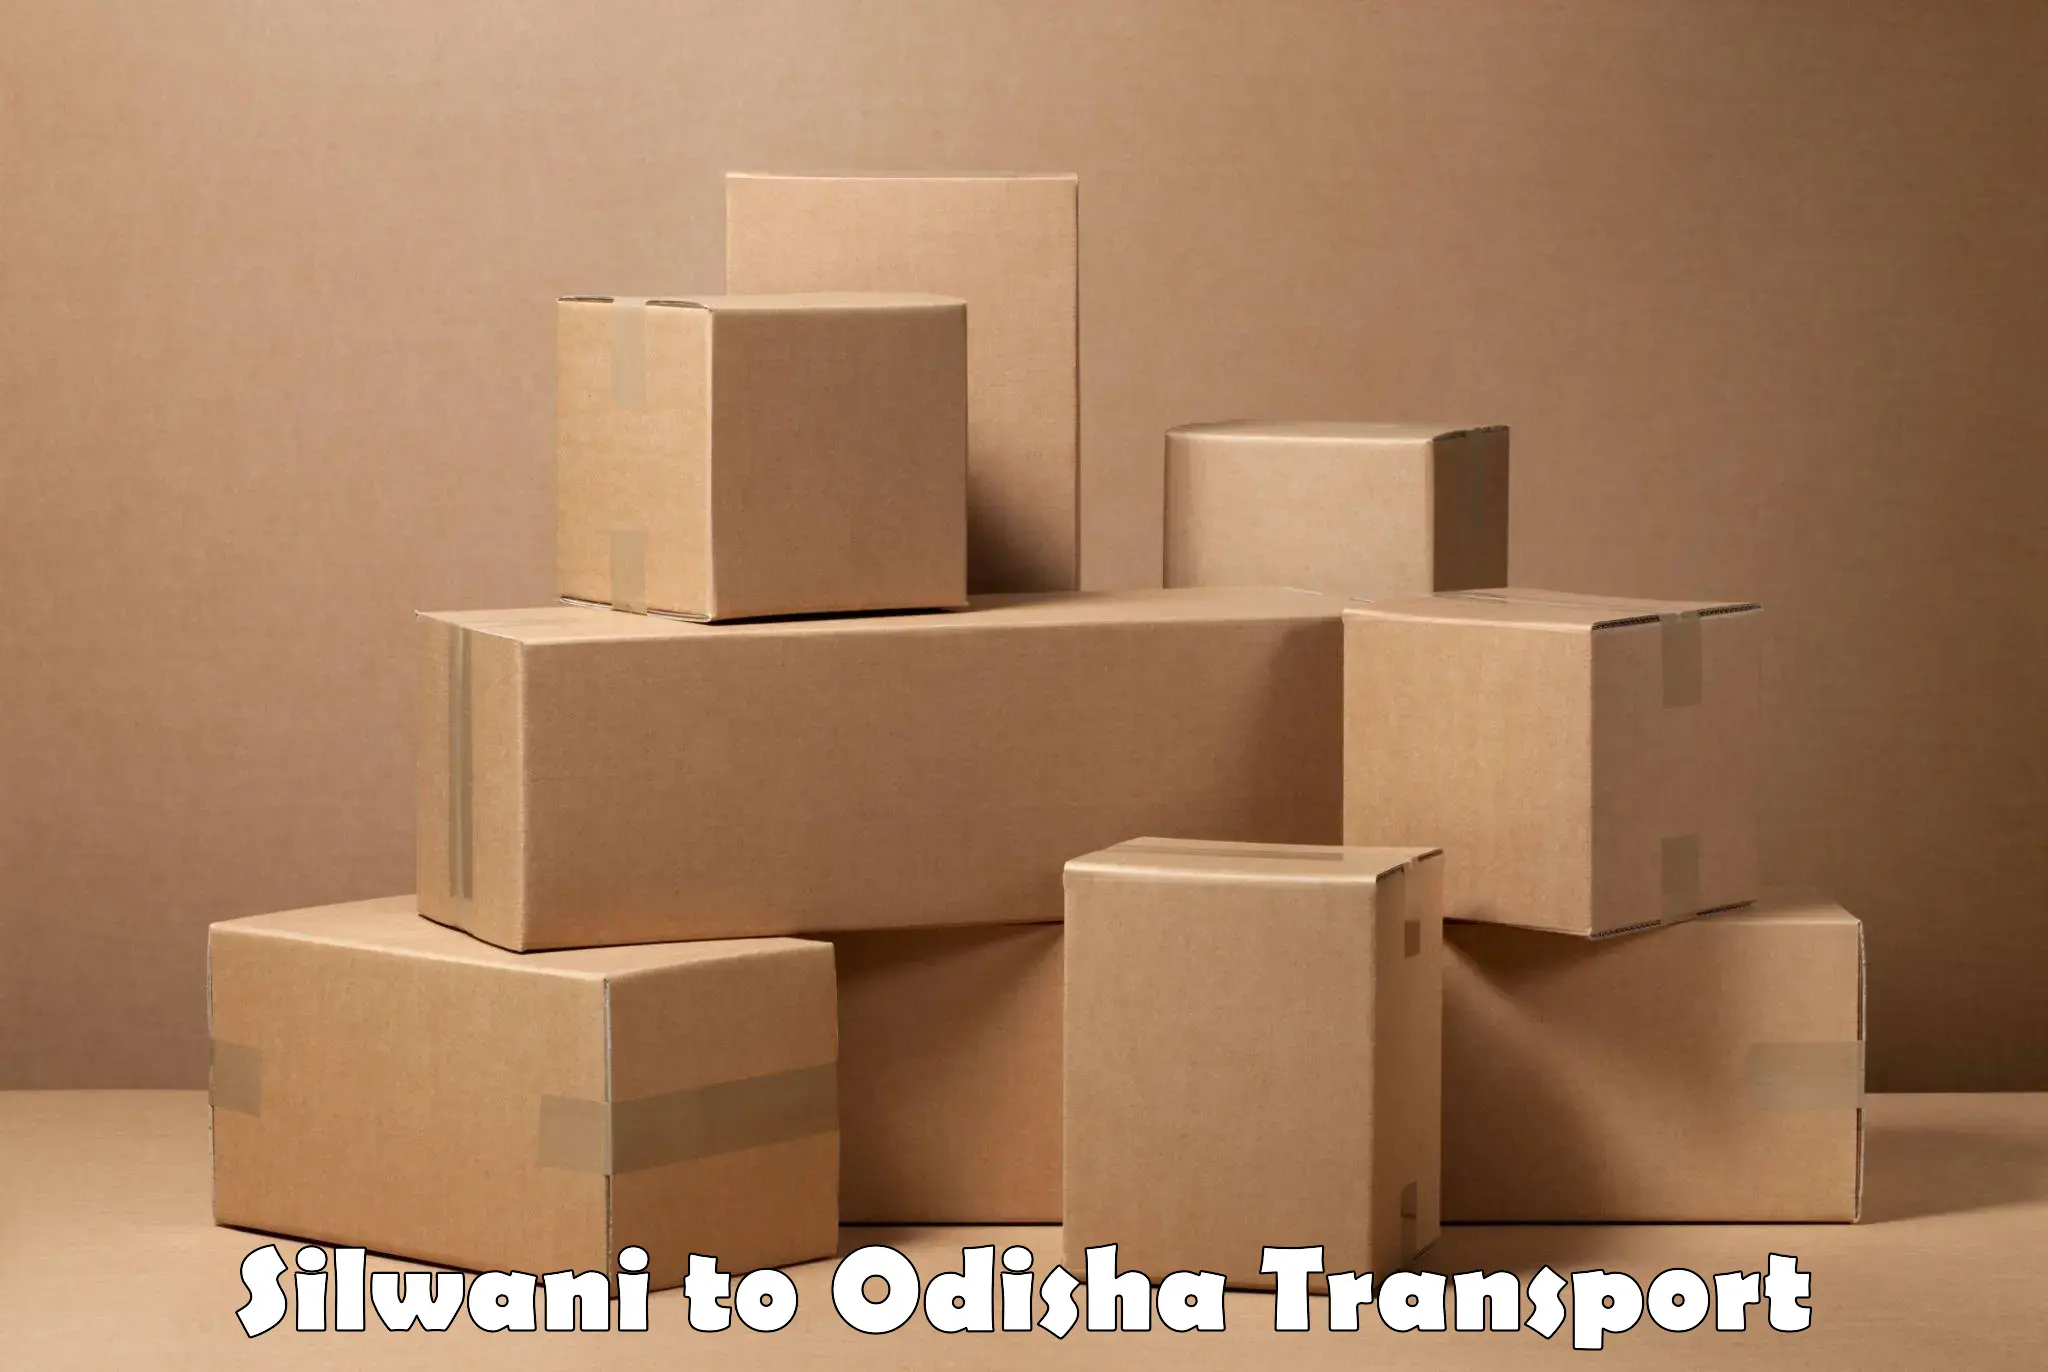 Cargo transport services Silwani to Kuchinda